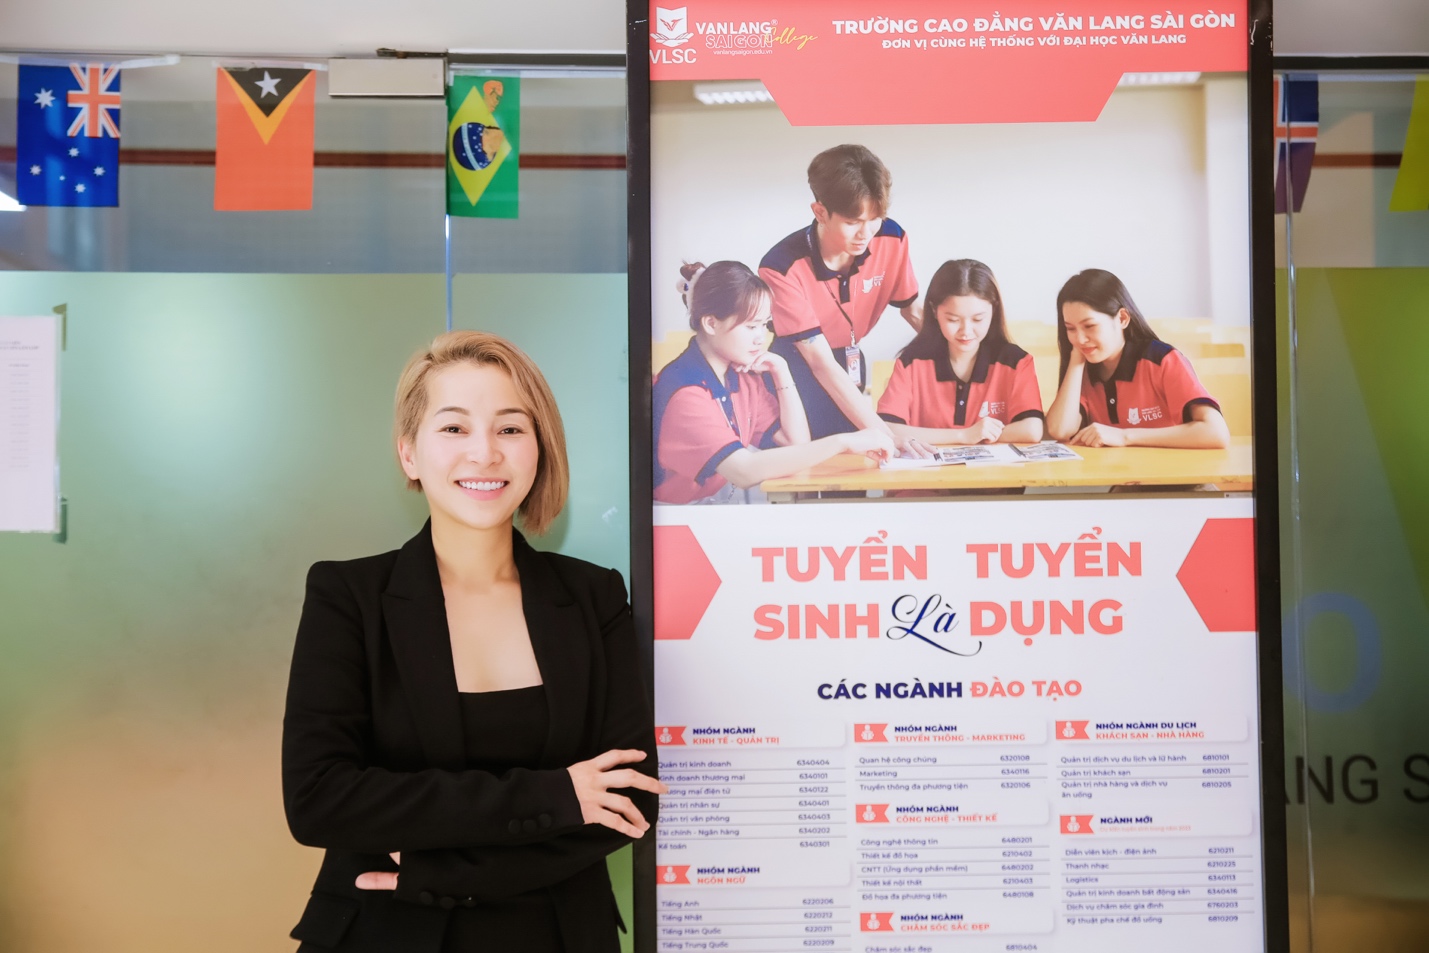 Sinh viên Cao đẳng Văn Lang Sài Gòn gặp gỡ chuyên gia làm đẹp Nguyễn Bảo Châu - ảnh 4